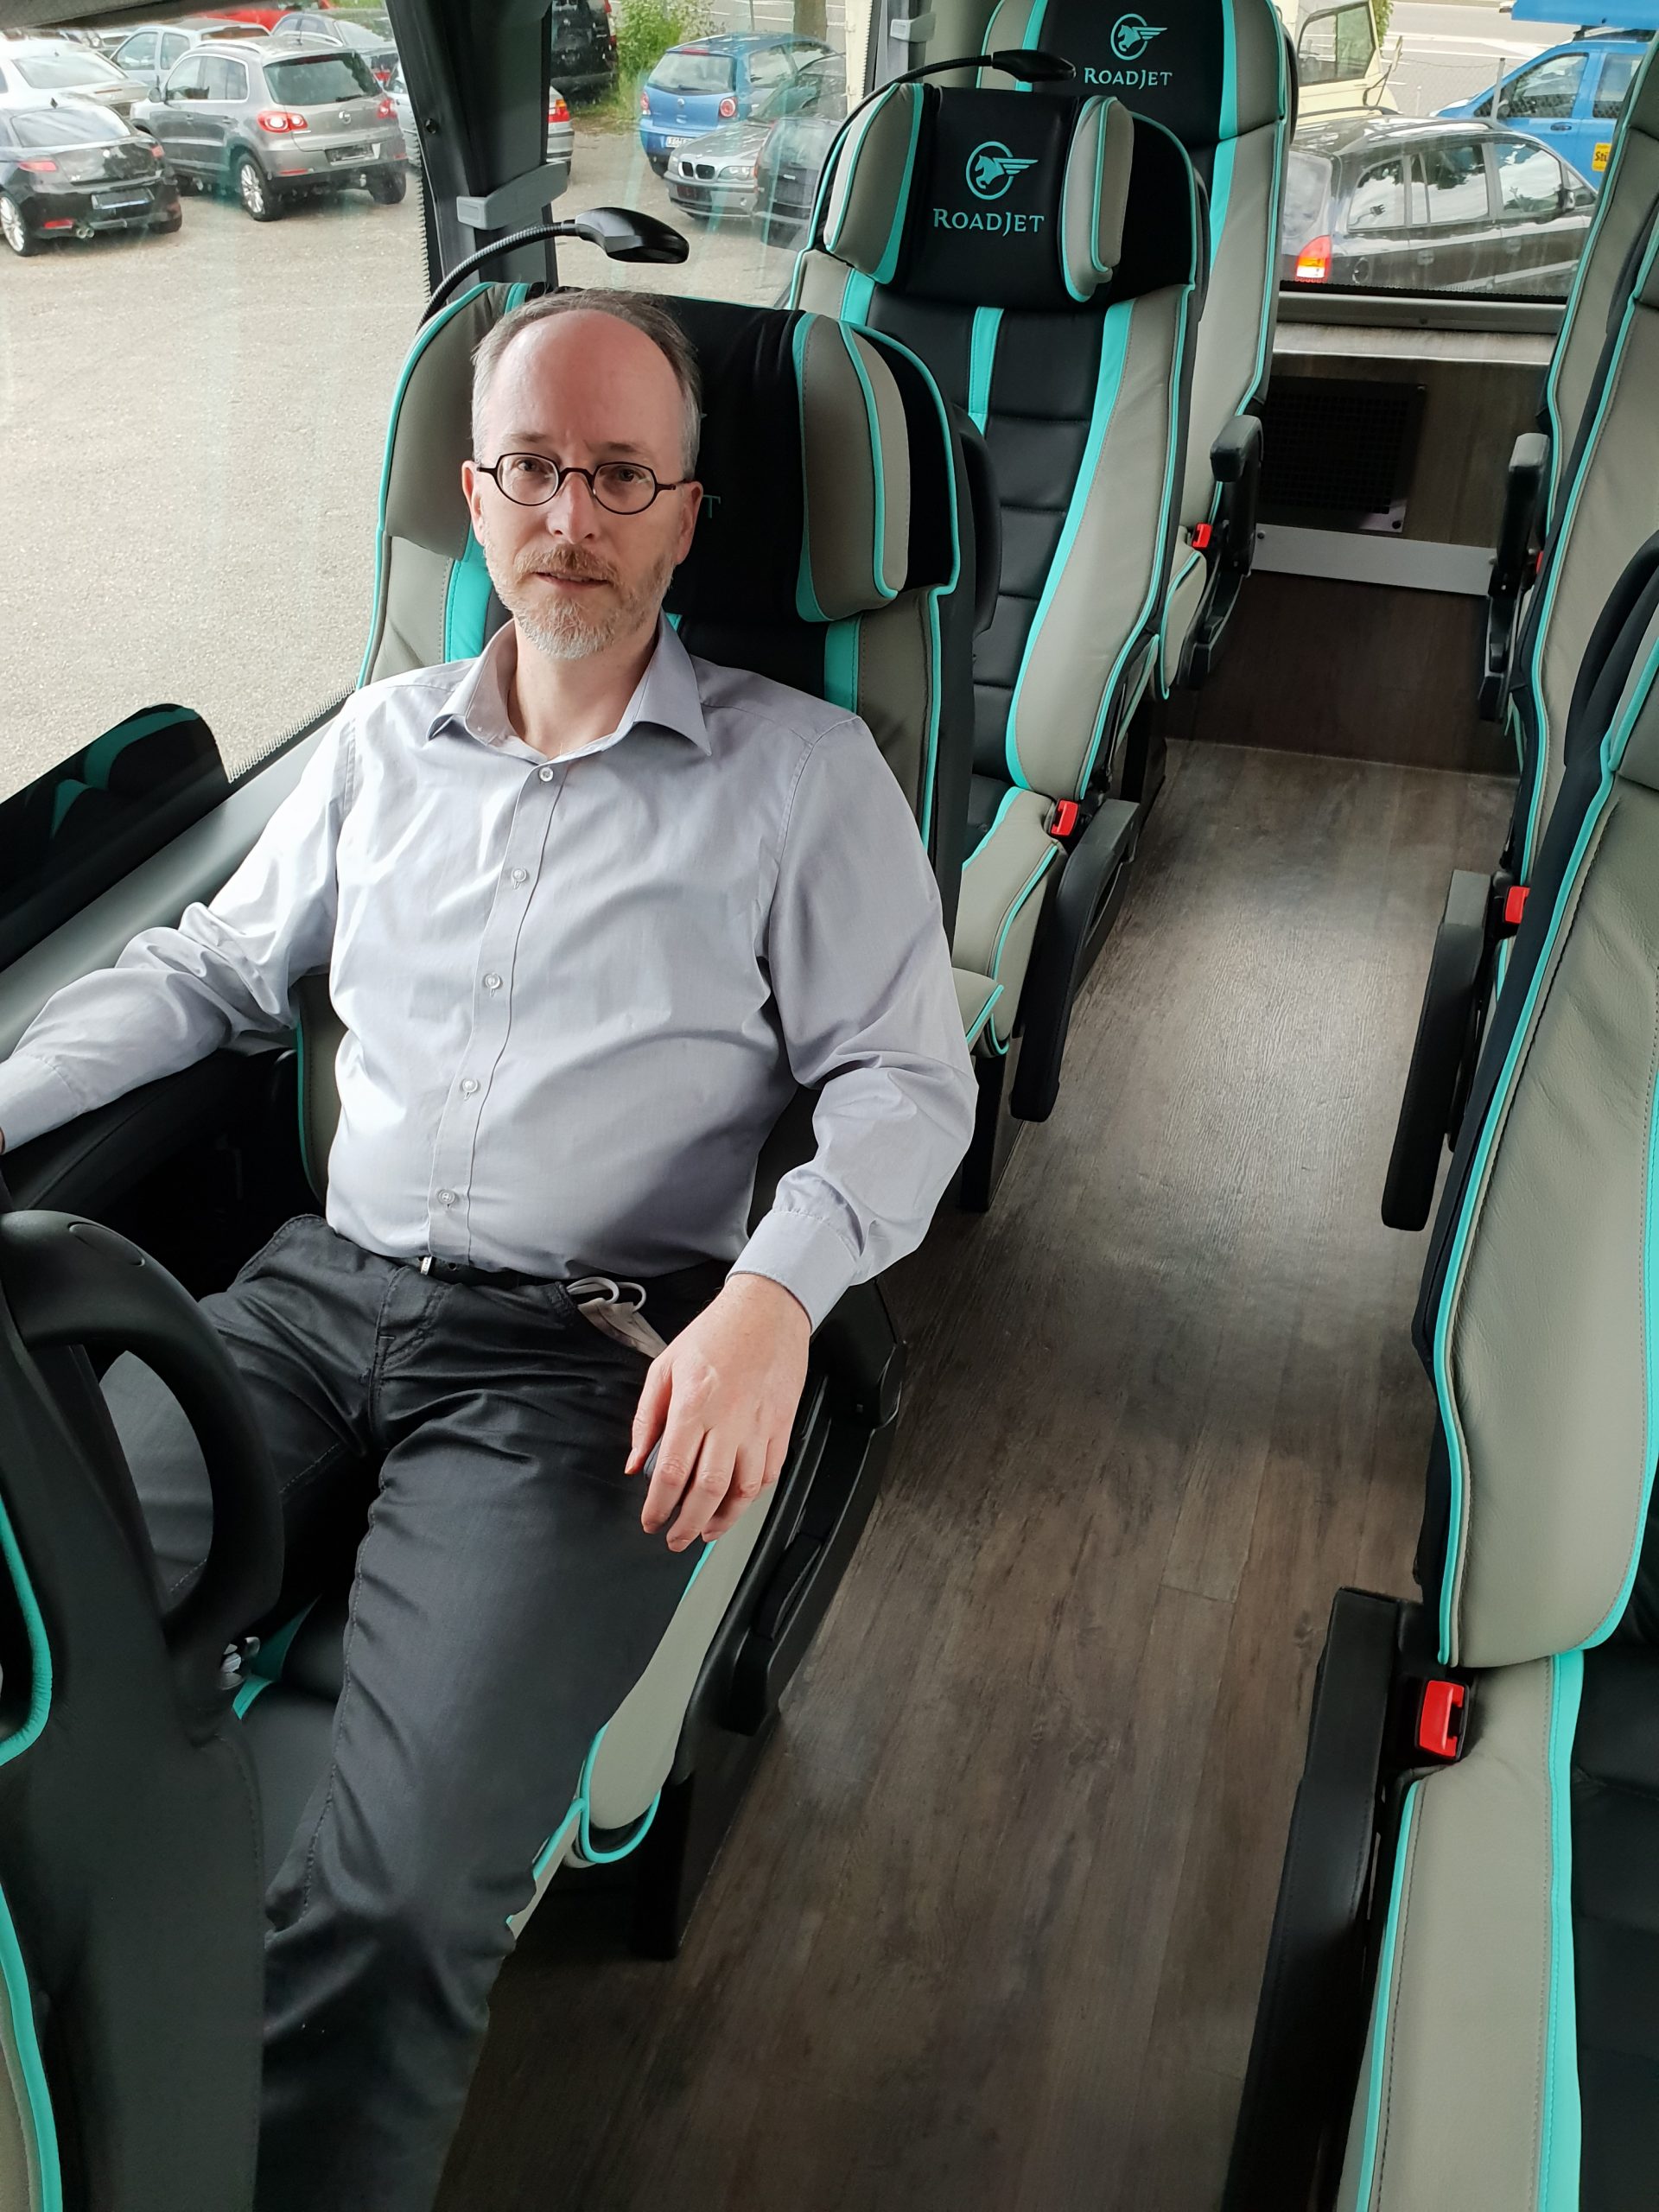 Roadjet: Neuer Anbieter auf Fernbusmarkt